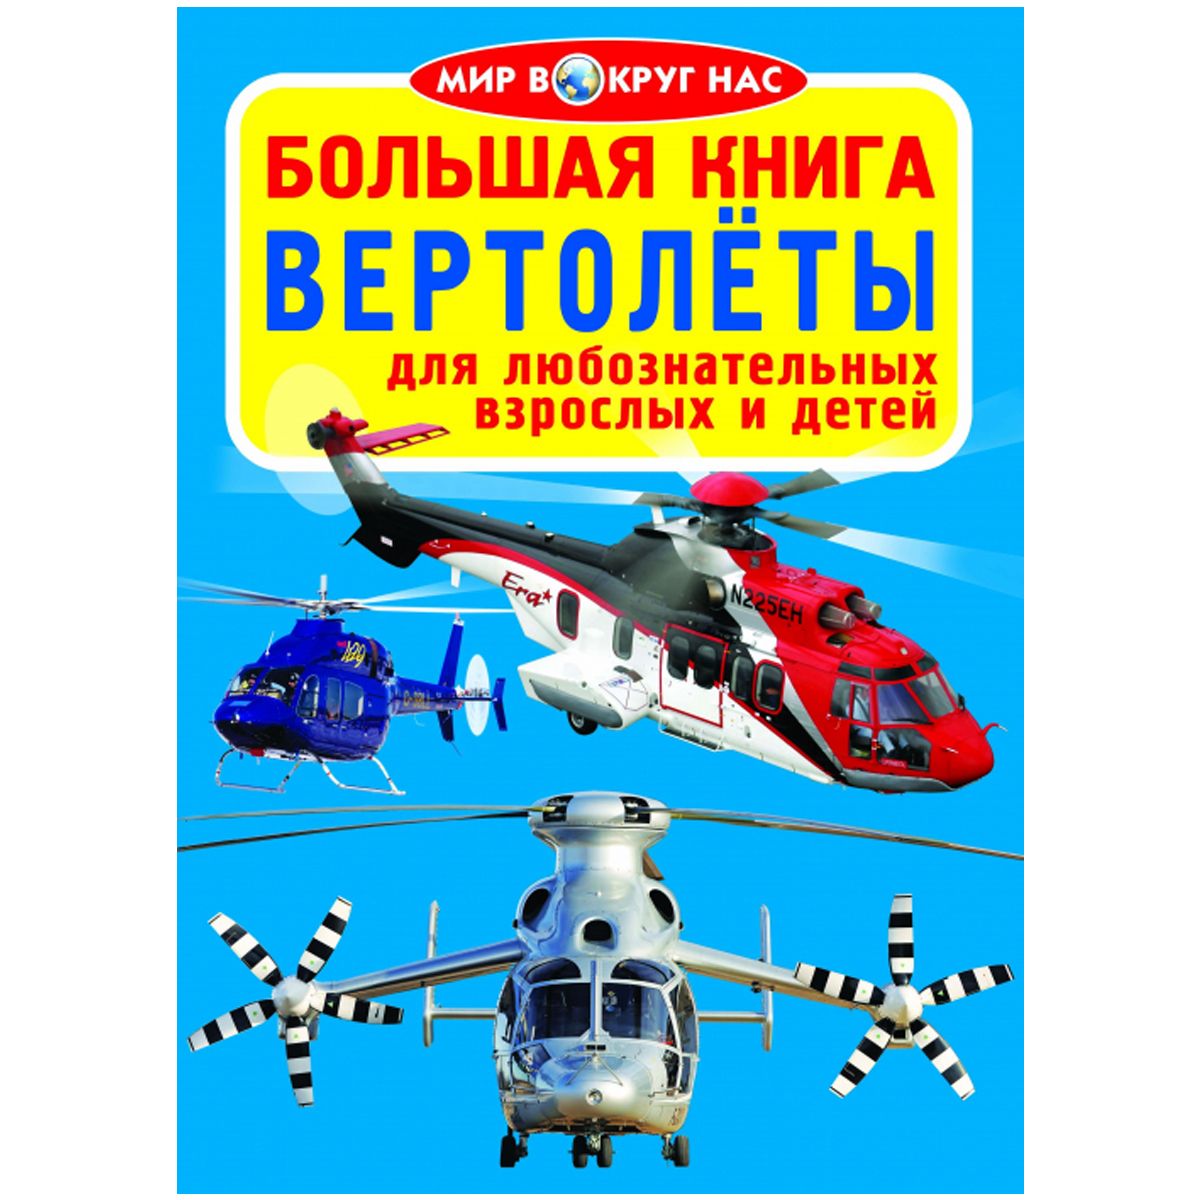 Книга "Большая книга.  Вертолёты" (рус)